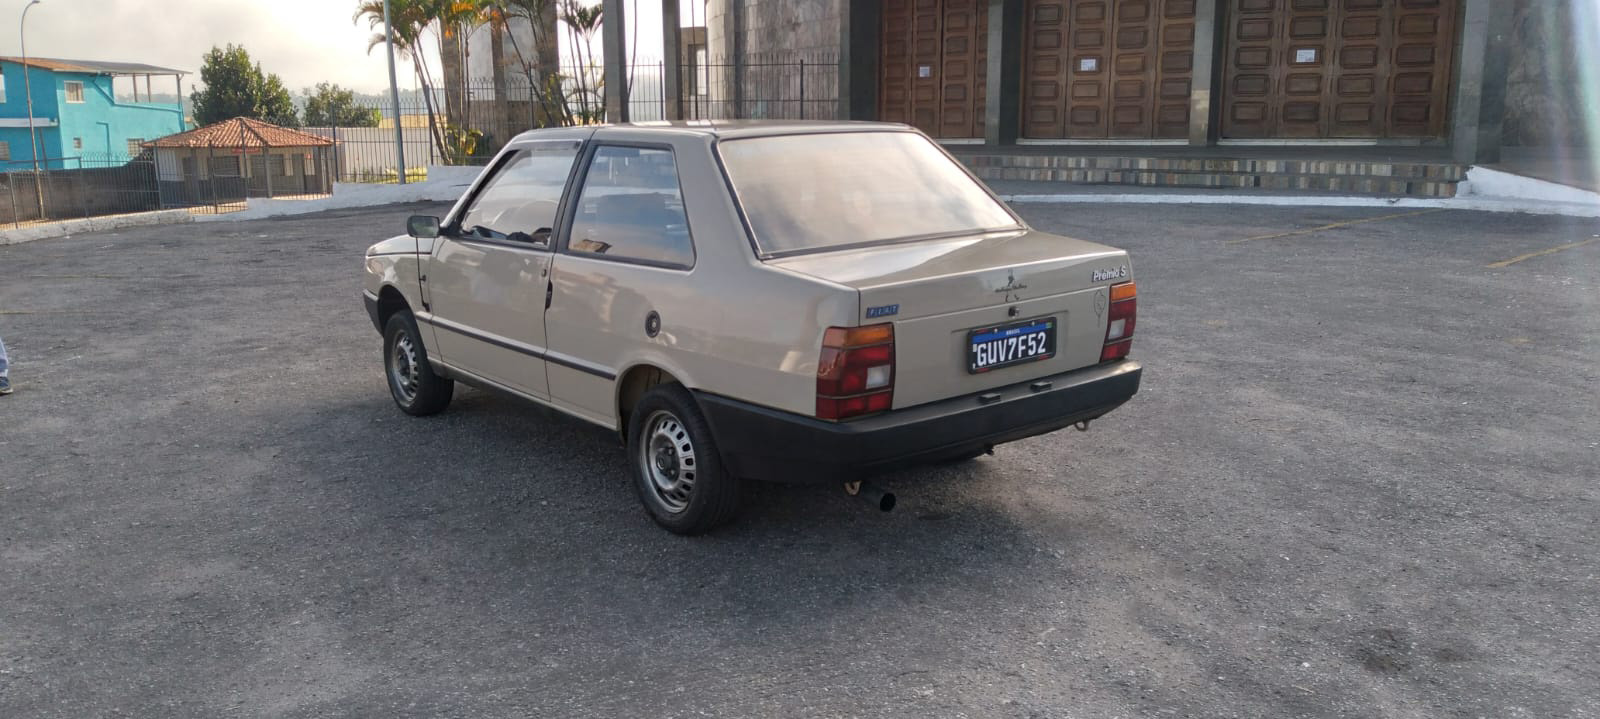 Fiat Prêmio 1986 de traseira estacionado